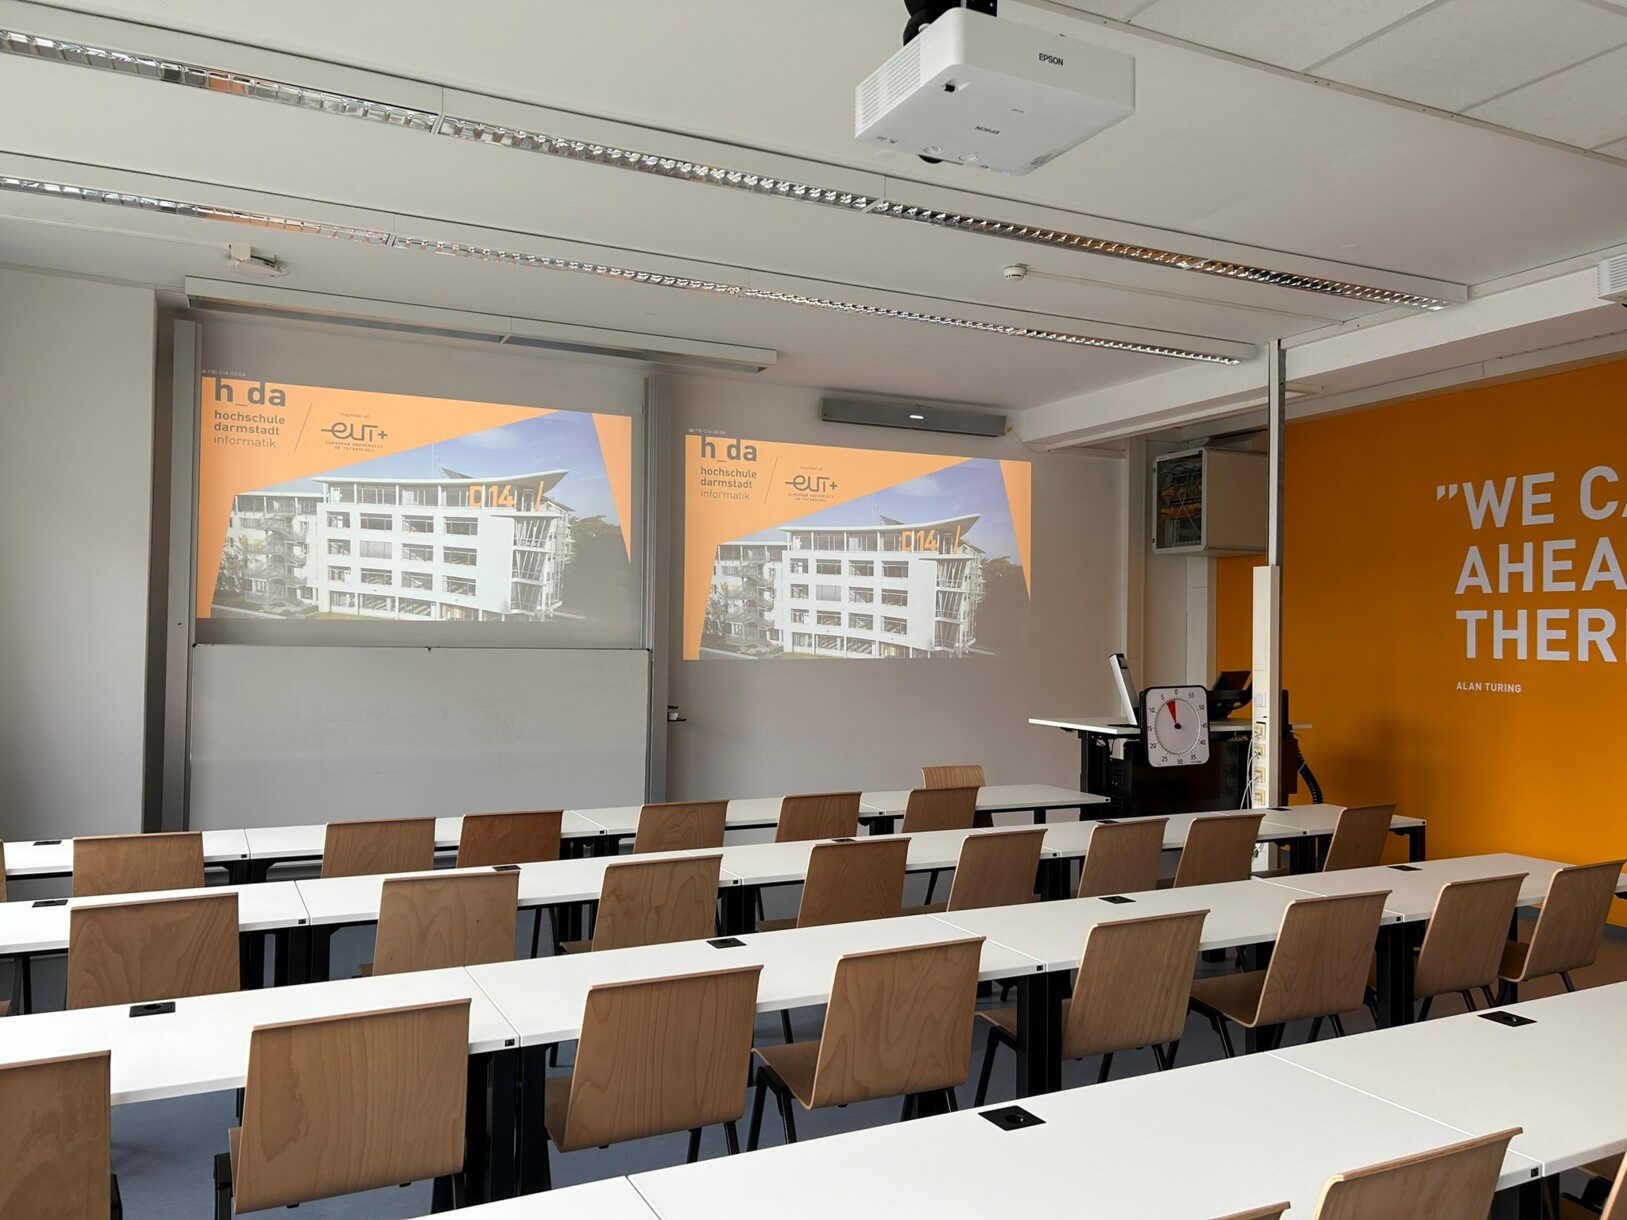 Salle de séminaire équipée de Cynap Pro à l'Université des sciences appliquées de Darmstadt.